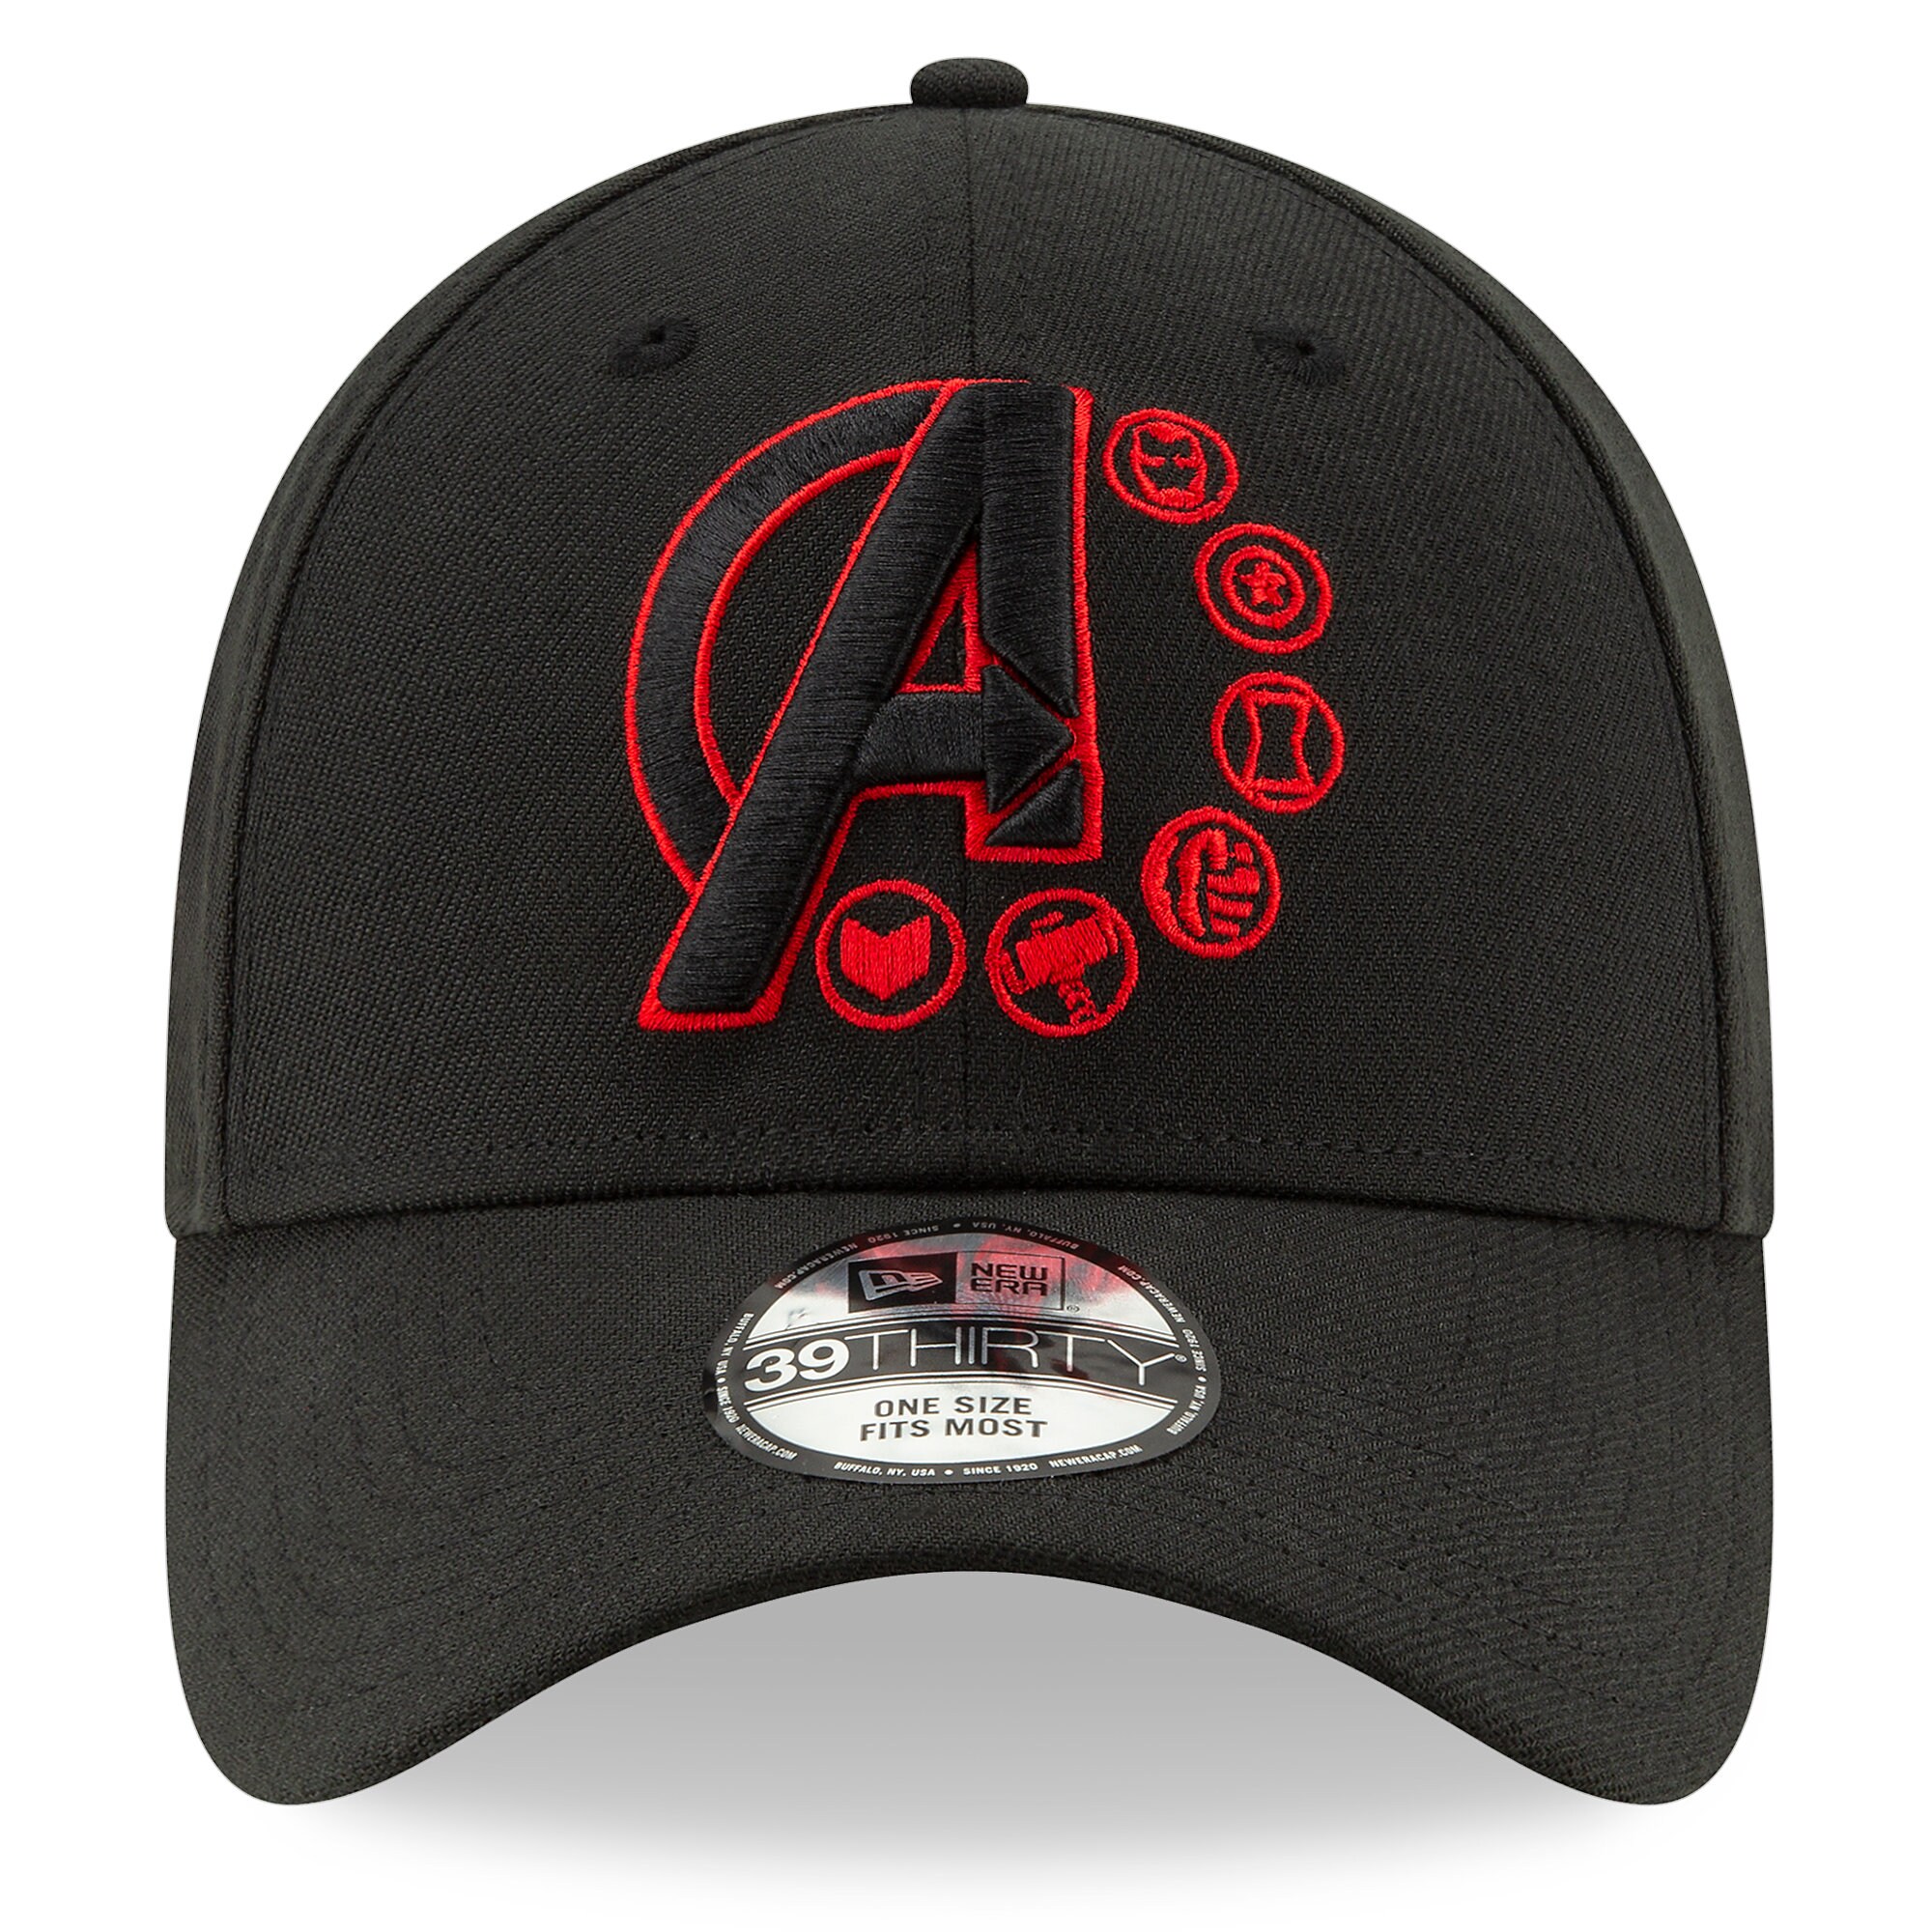 Marvel's Avengers: Endgame Baseball Cap for Adults by New Era - Marvel Studios 10th Anniversary